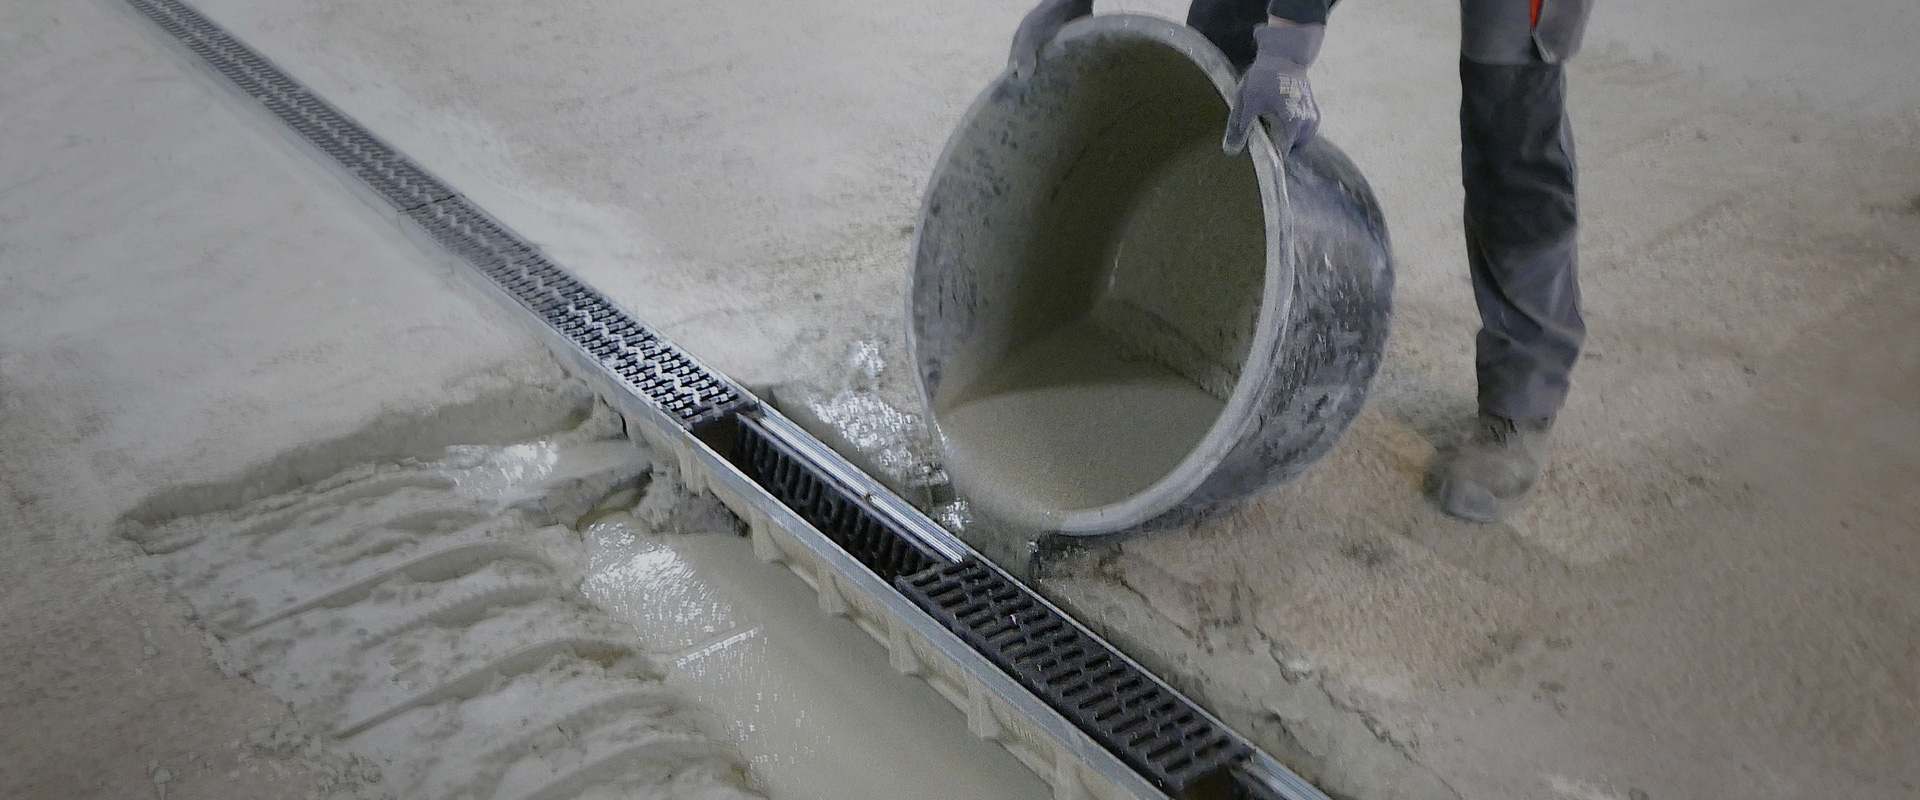 Réparation d'un canal de drainage dans un parking souterrain à l'aide du nouveau béton de scellement Emcekrete 50 A.